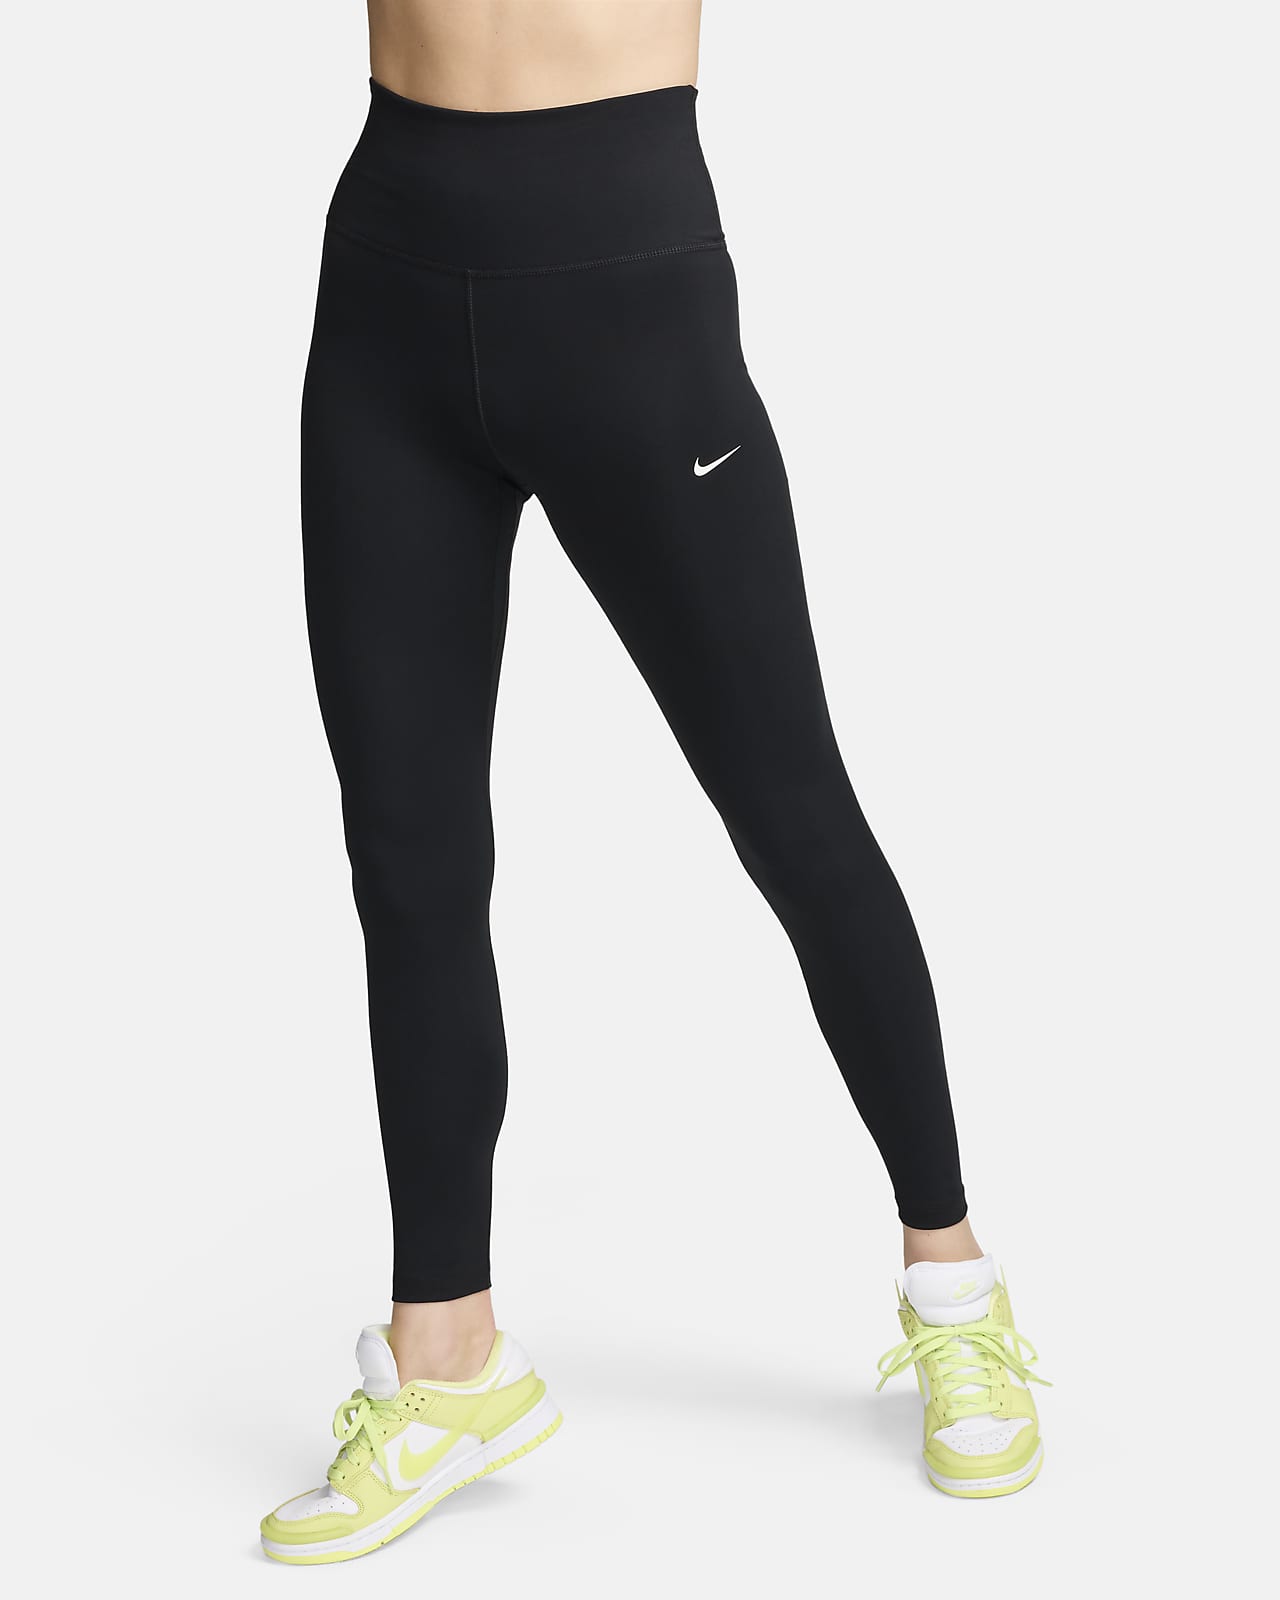 Leggings a tutta lunghezza a vita alta Nike One – Donna